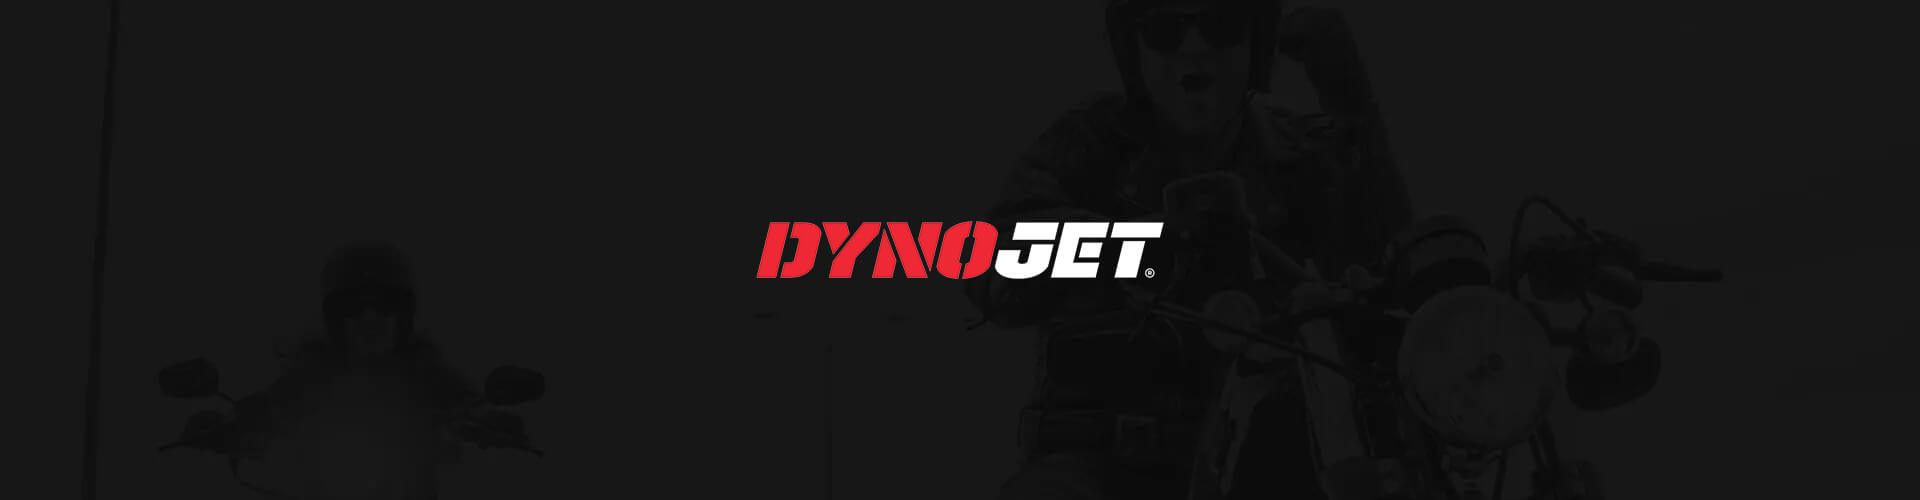 Dynojet banner